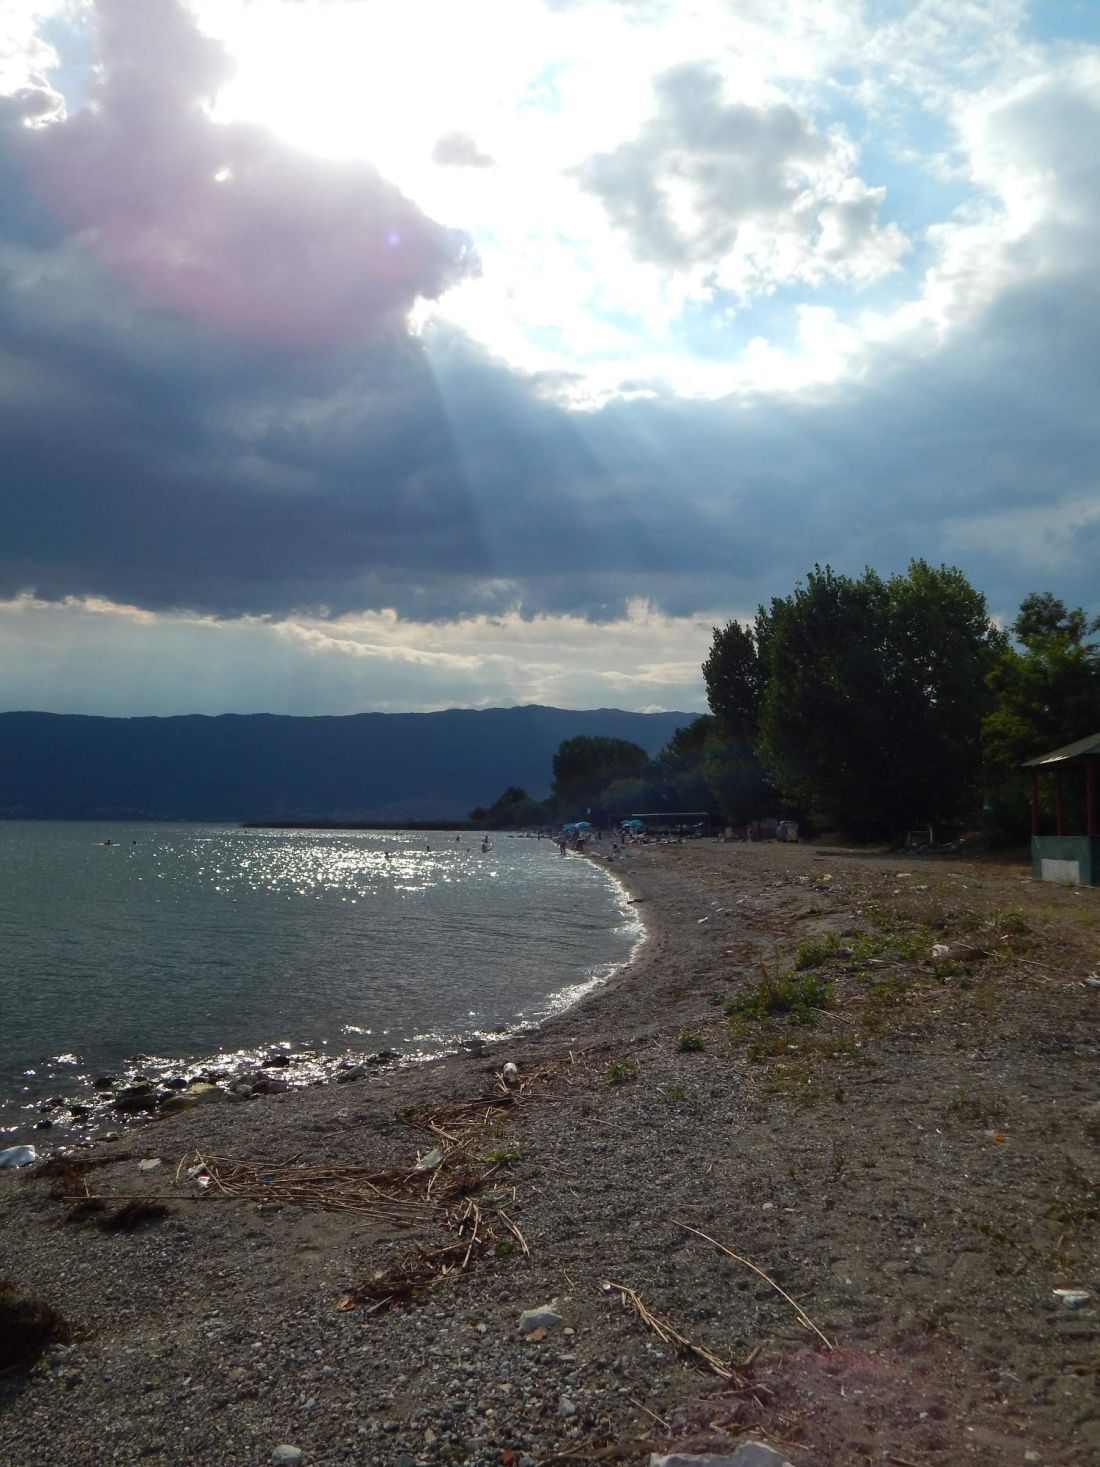 Ohridské jezero v záři večerního slunce